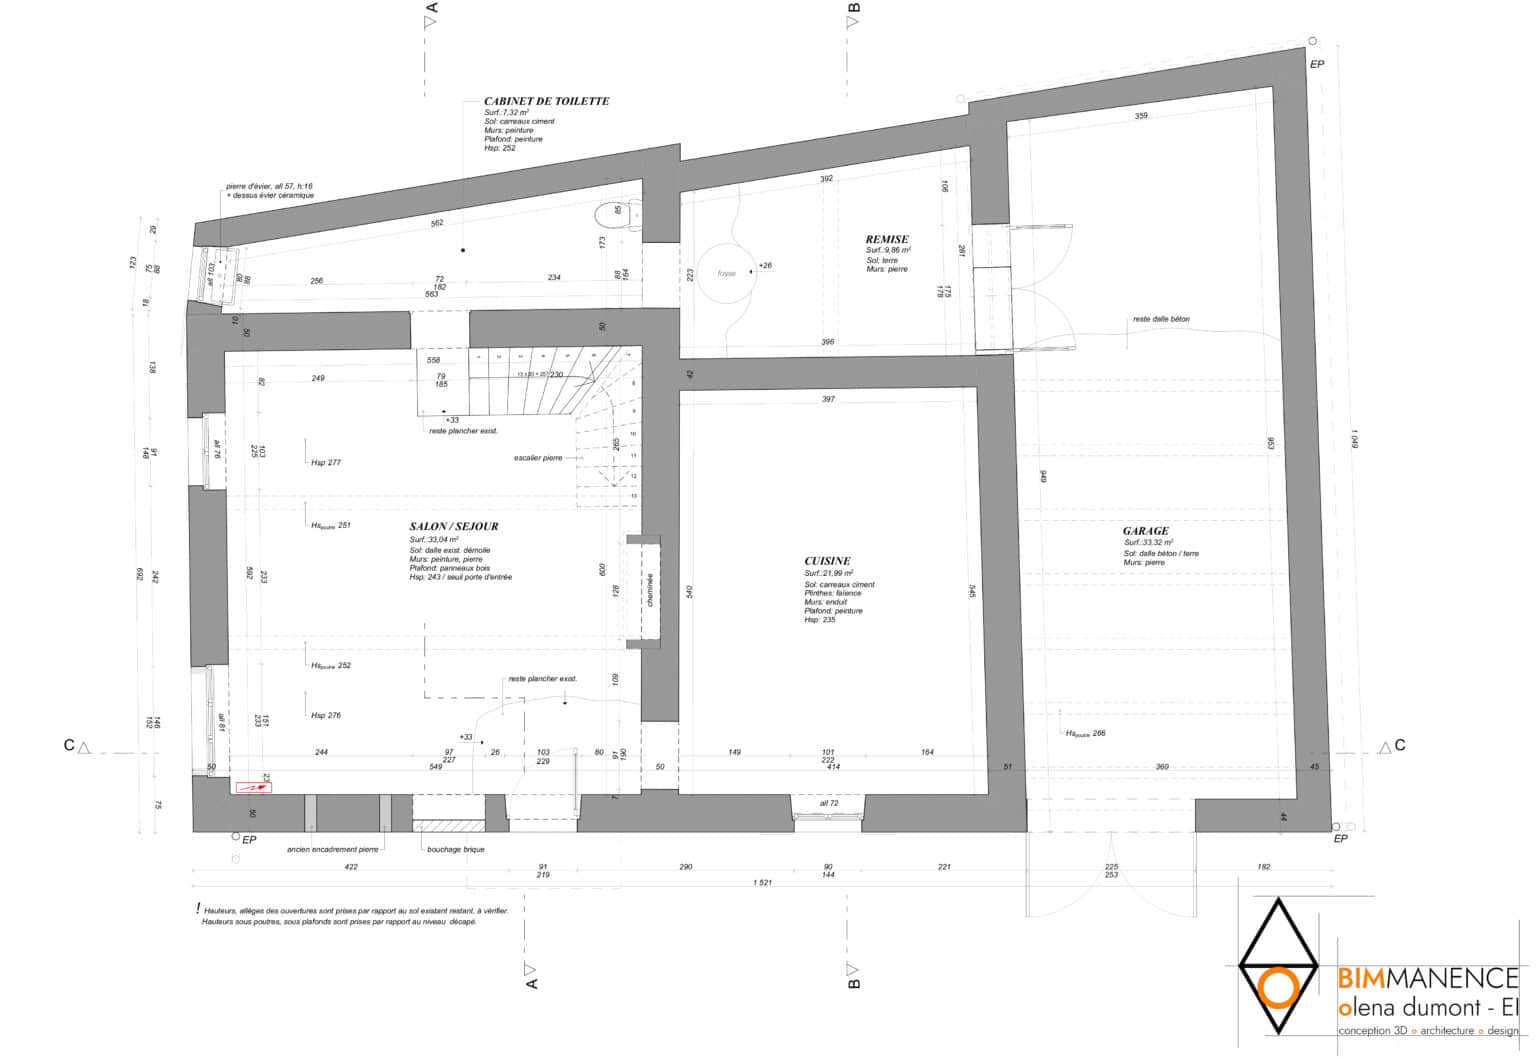 Etat des lieux Conception 3D BIM Manence Olena Dumont Architecte concept projet bim modeling design (1) dépôt permis de construire